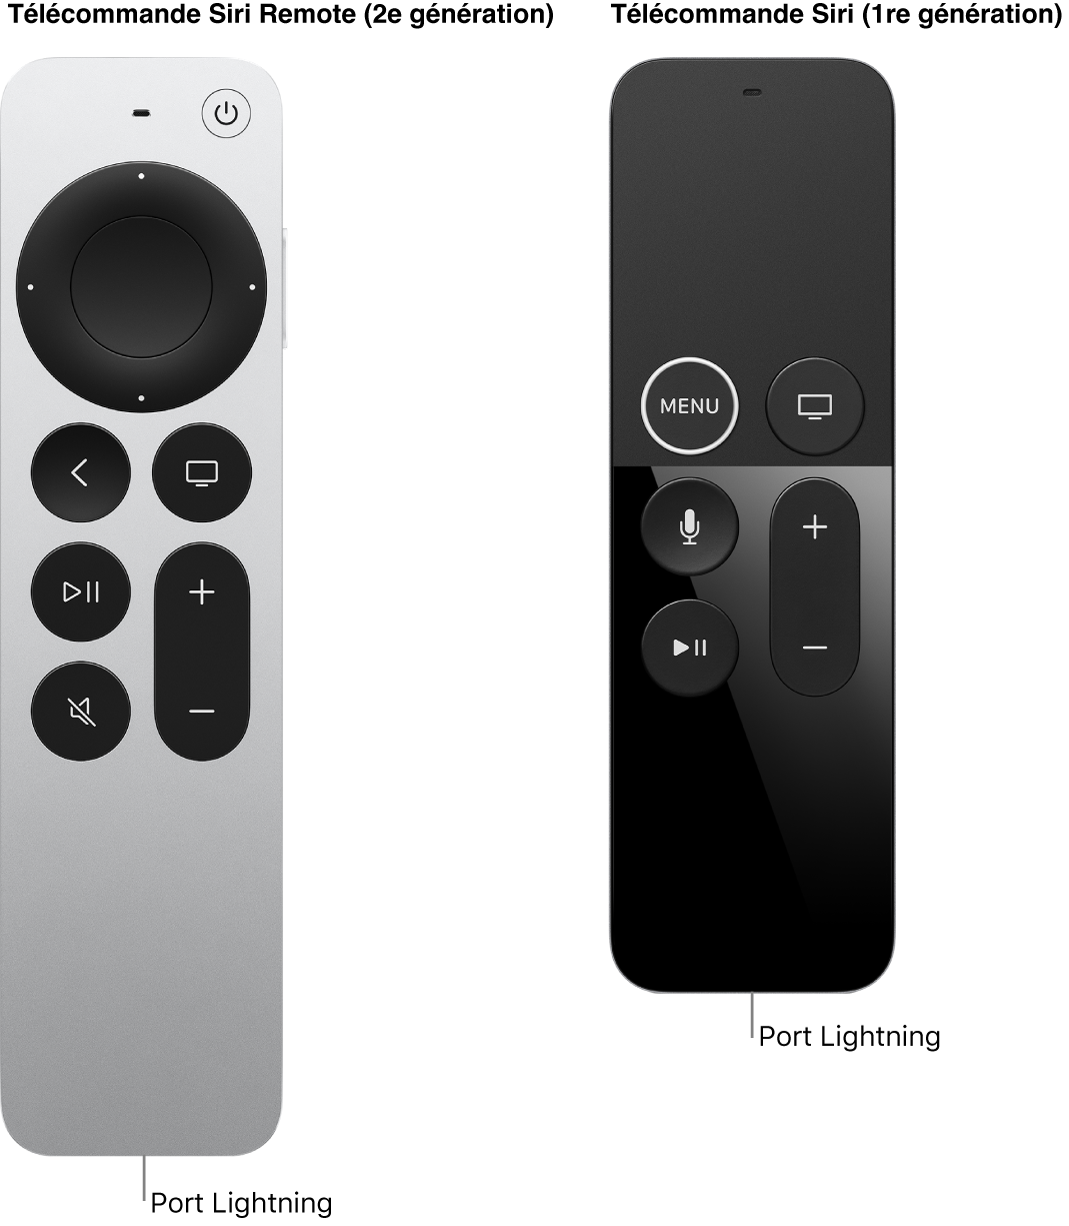 Image de la télécommande Siri Remote (2e génération) et de la télécommande Siri Remote (1re génération) montrant le port Lightning